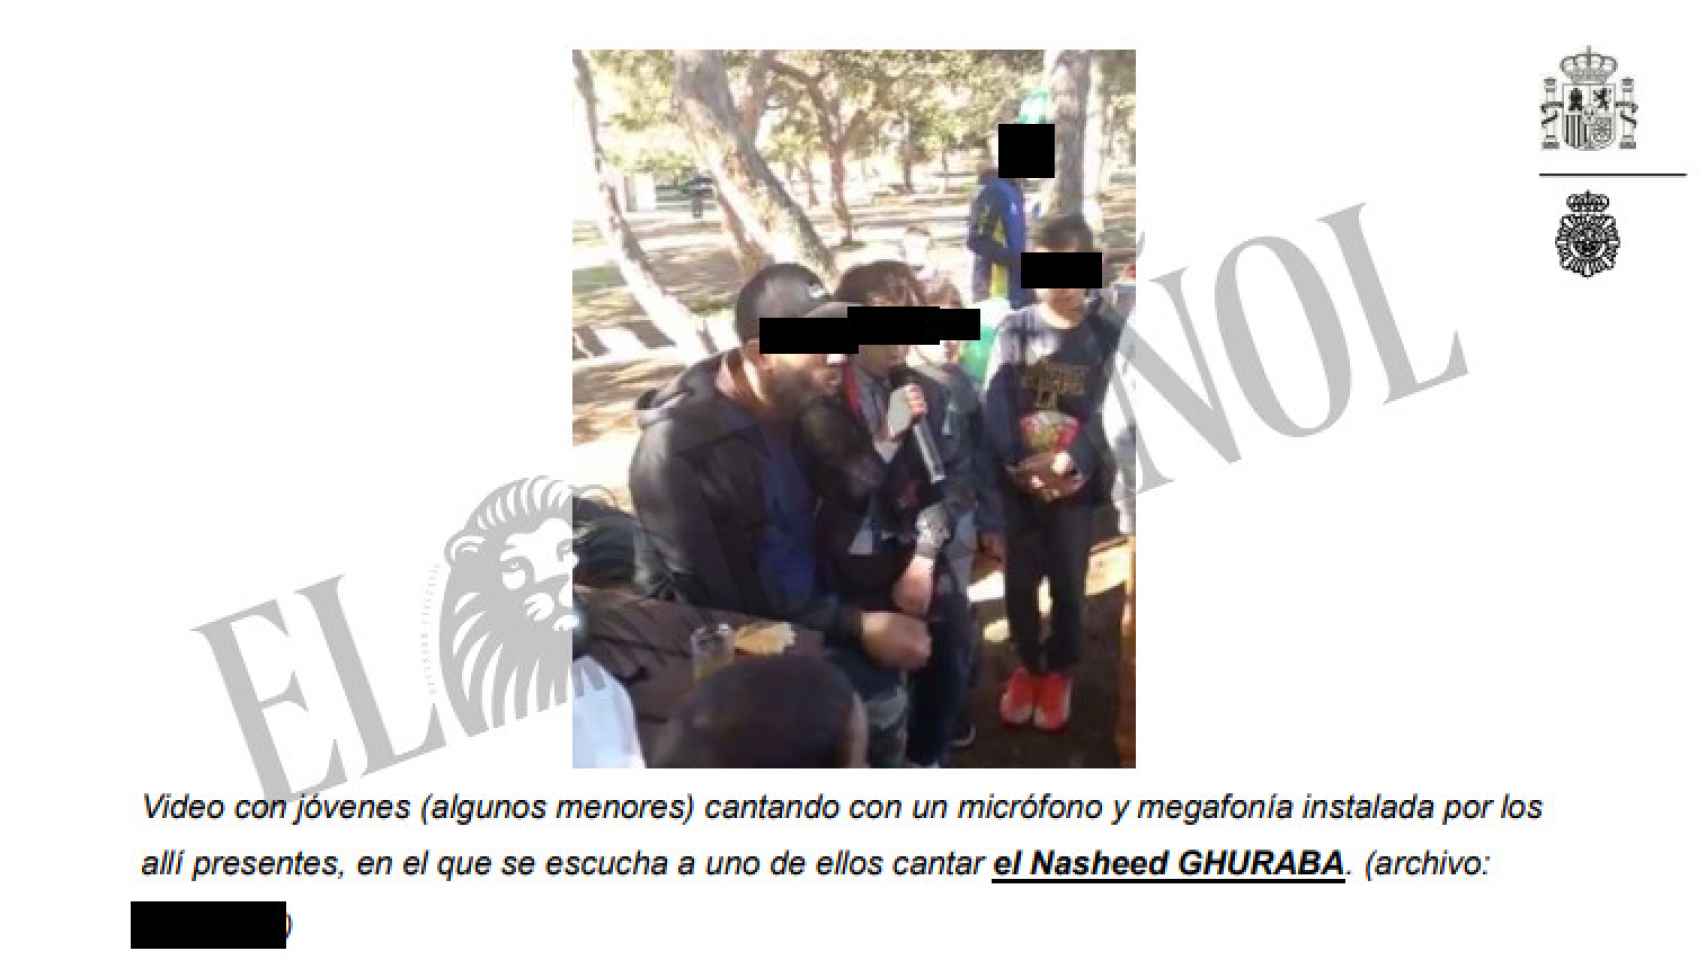 Imagen de otro de los detenidos haciendo entonar a una niña un cántico proyihadista, incluida en el sumario del caso.